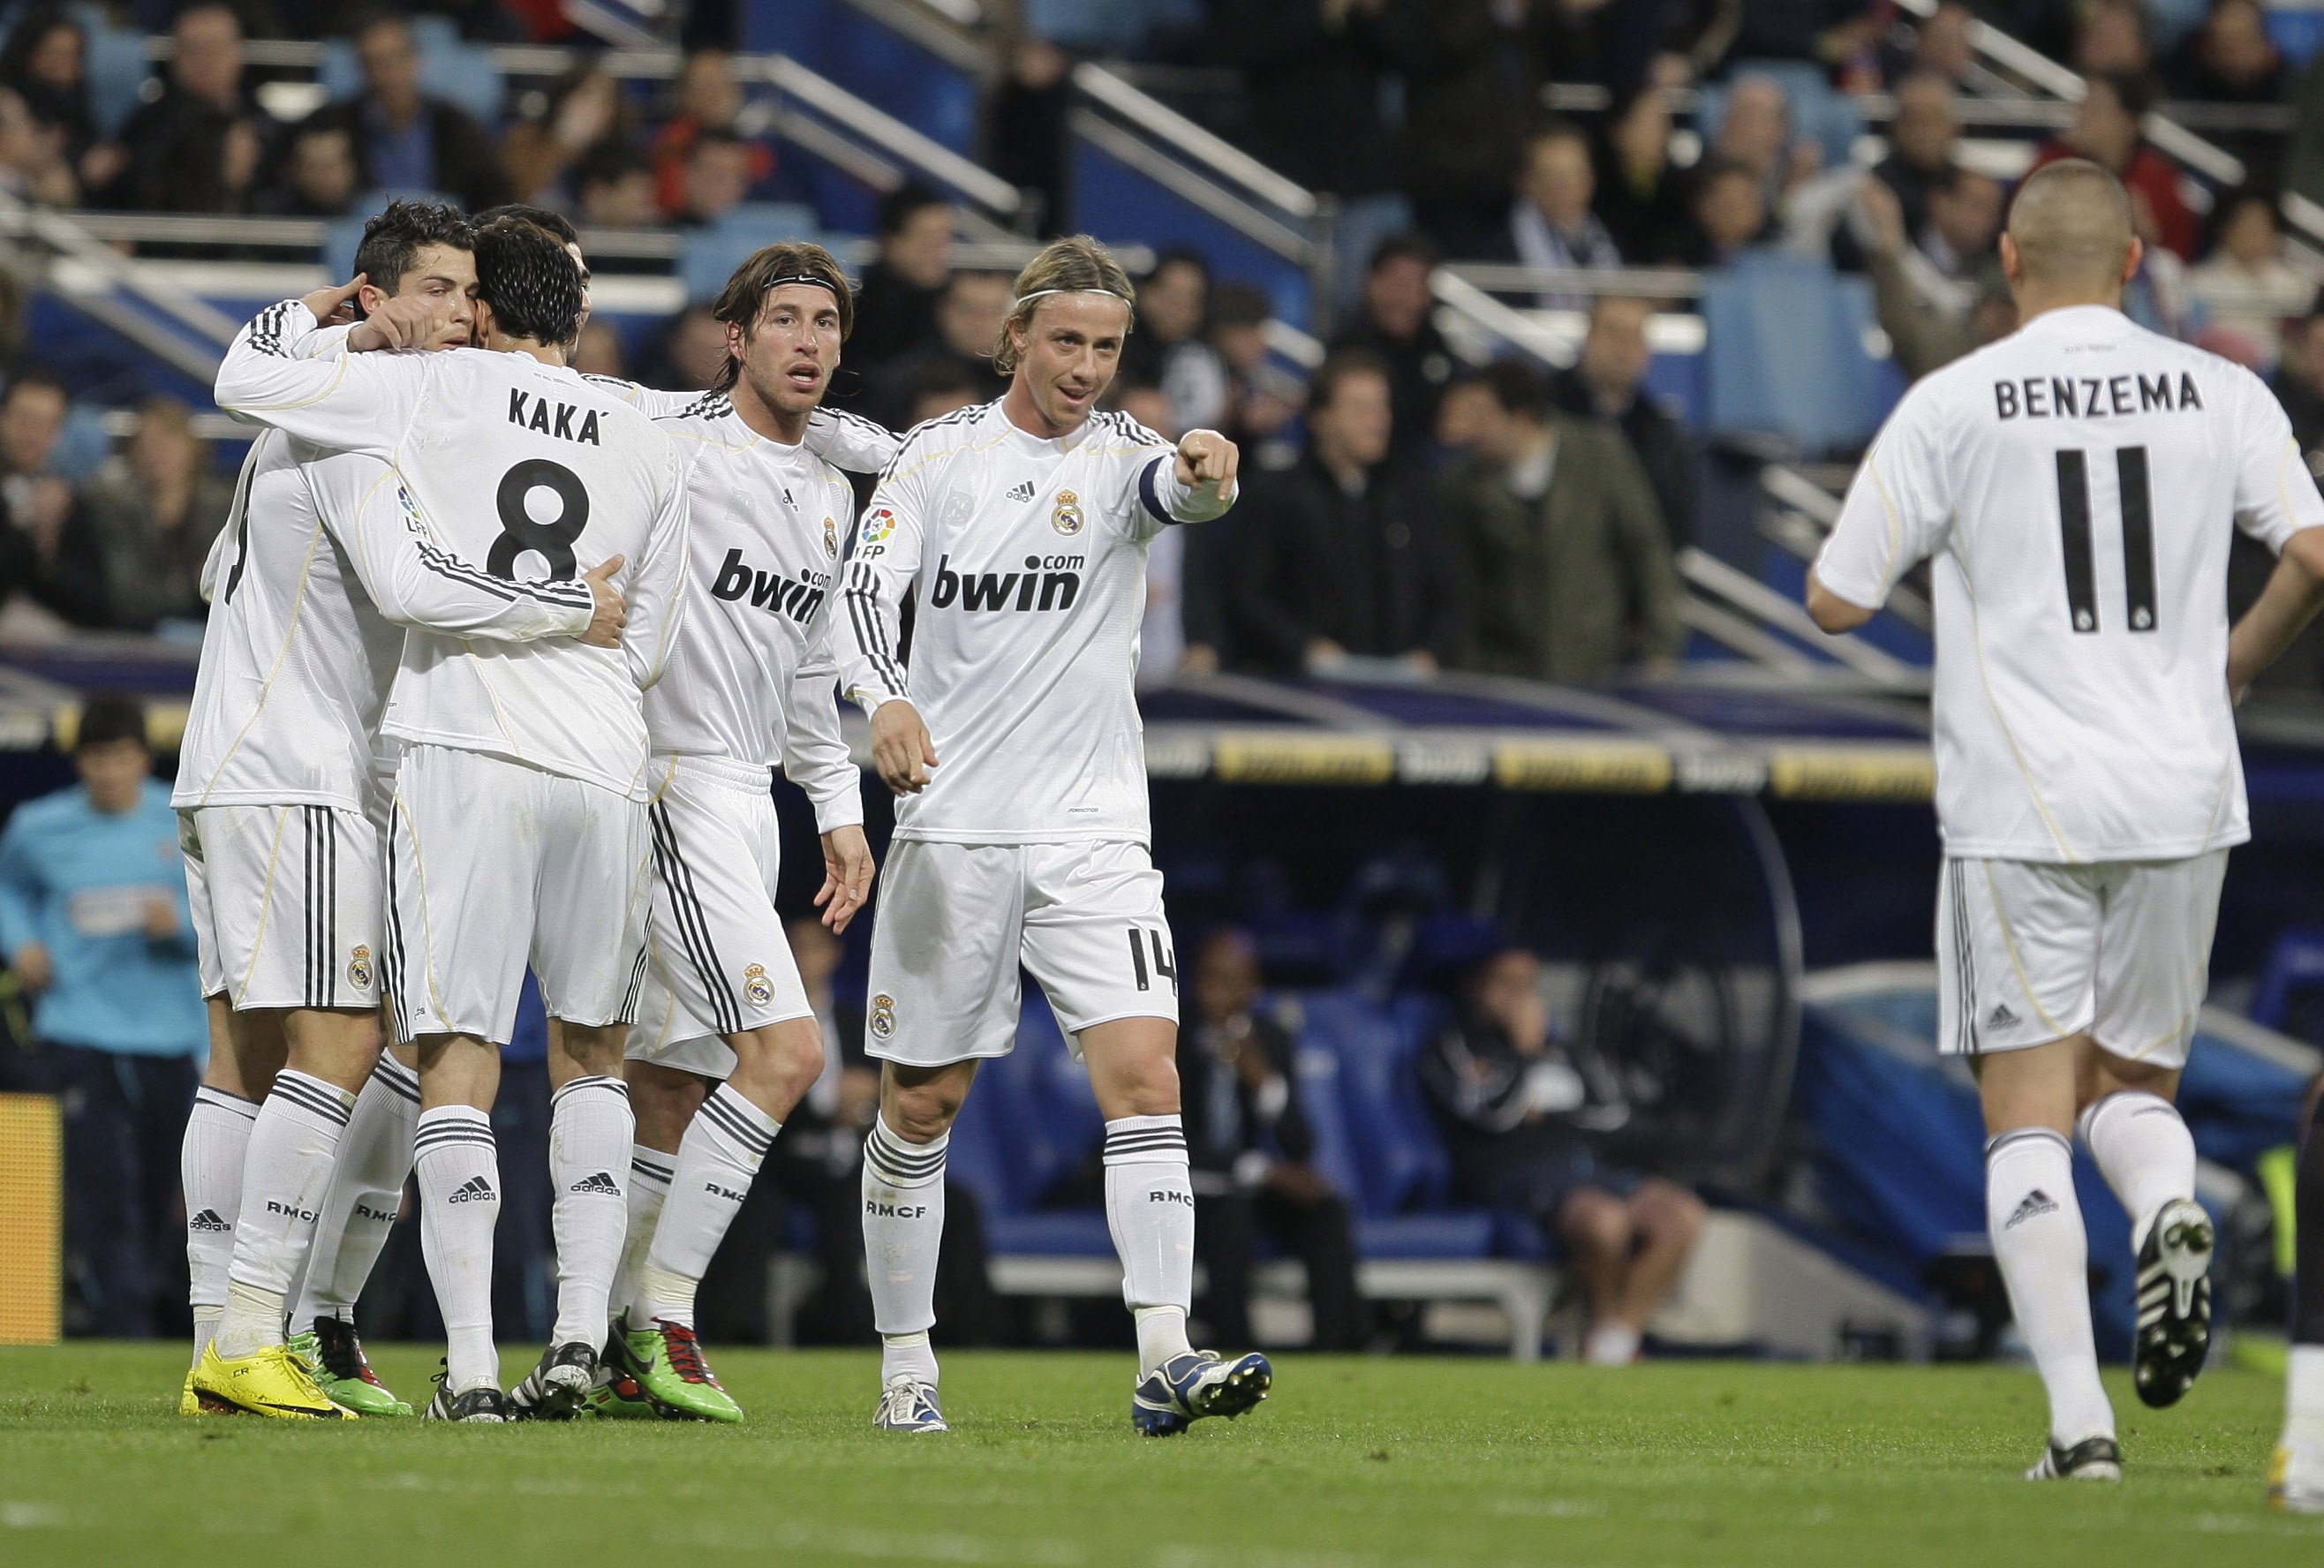 Patrick Mtiliga, Cristiano Ronaldo, Real Madrid, Malaga, La Liga